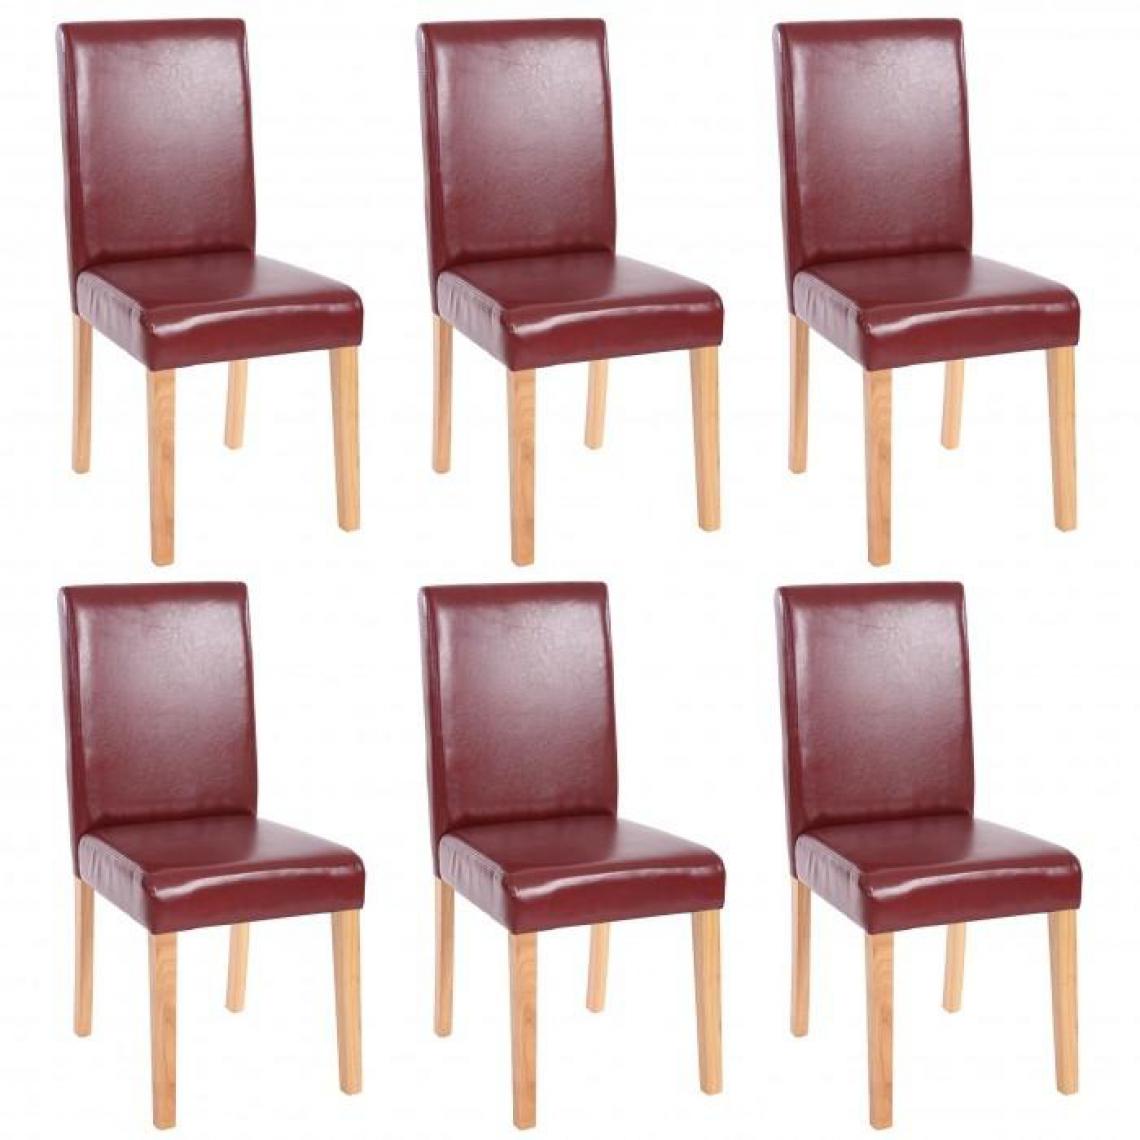 Decoshop26 - Lot de 6 chaises de salle à manger simili-cuir rouge/brun pieds clairs CDS04234 - Chaises